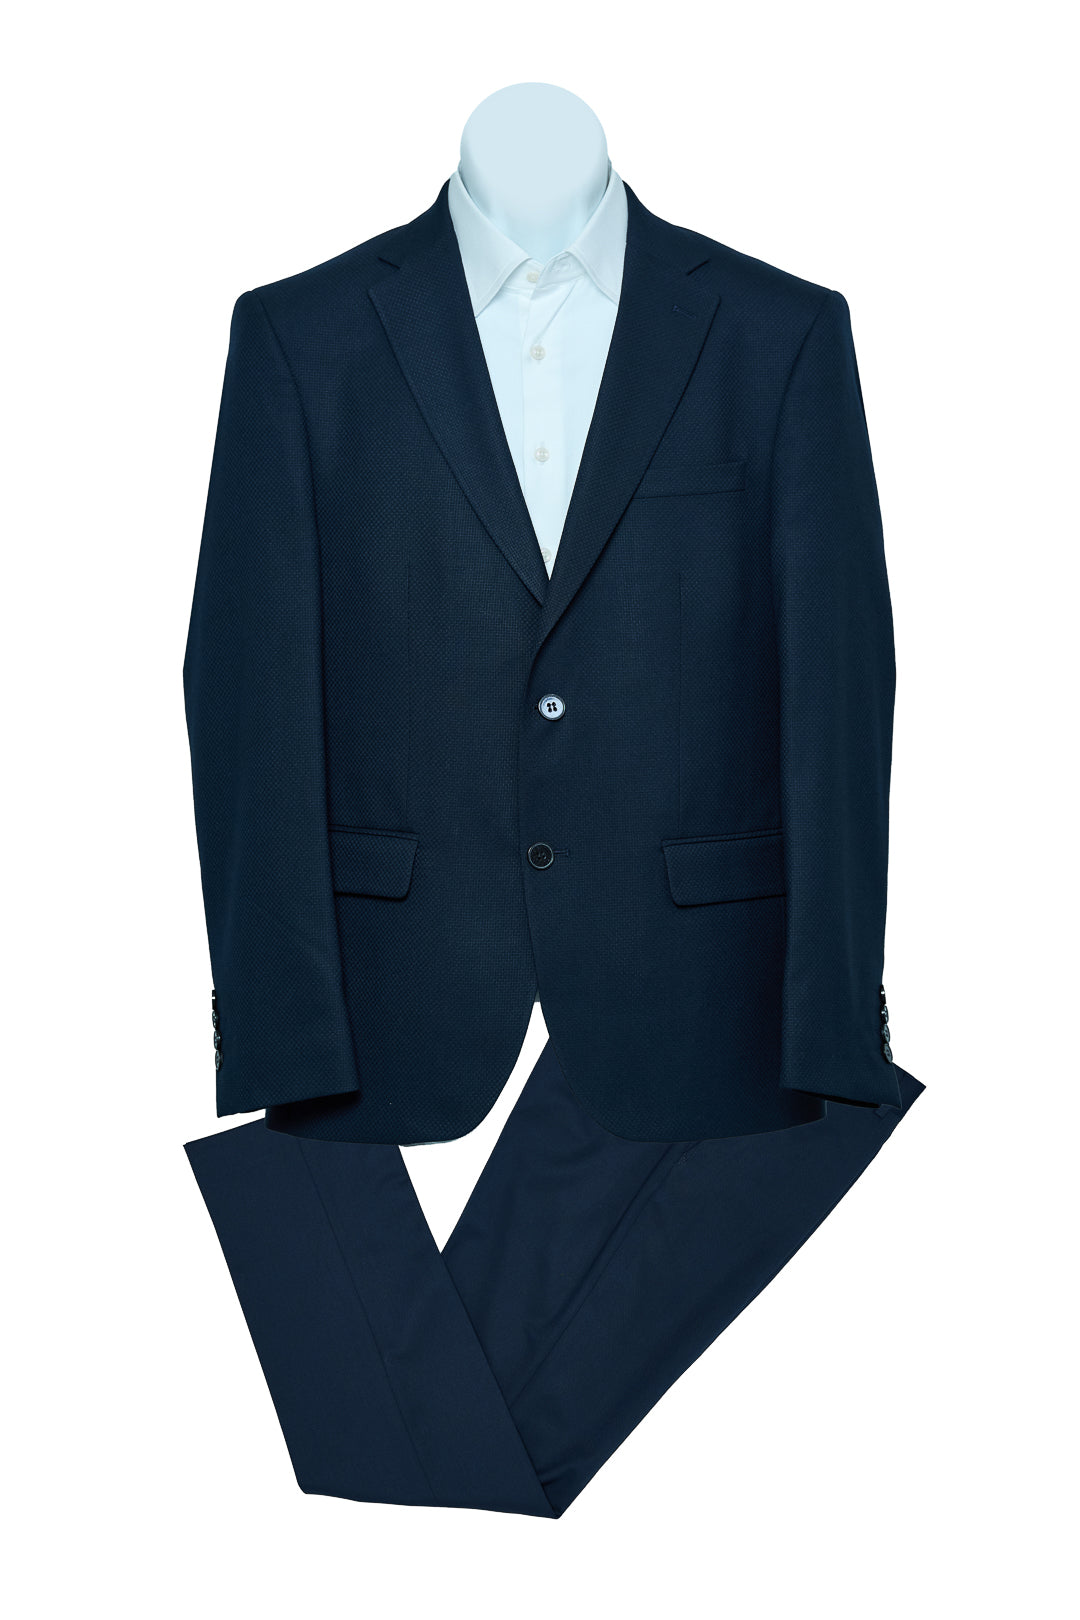 NEW Navy Blue Piqué Patterned Suit